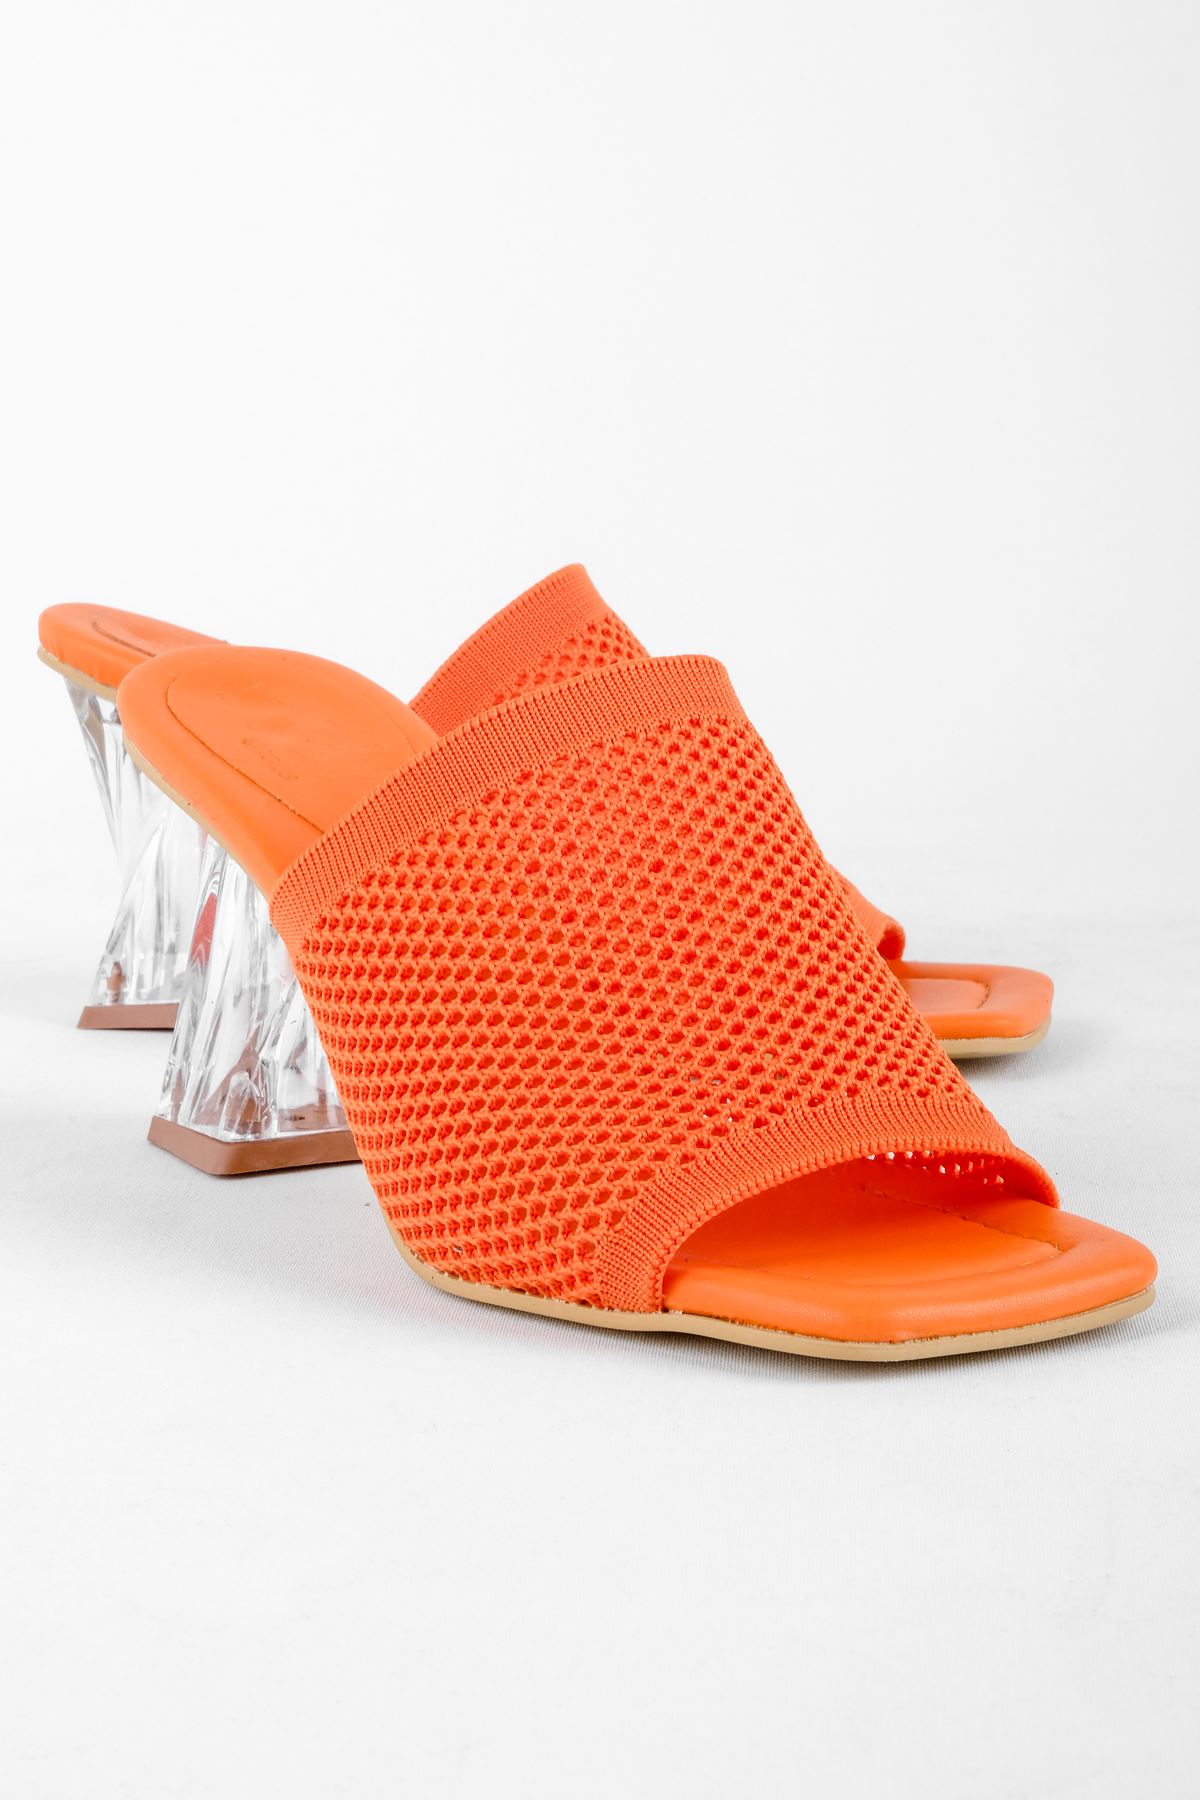 Afra Kadın Triko Topuklu Terlik-Şeffaf Topuk-turuncu